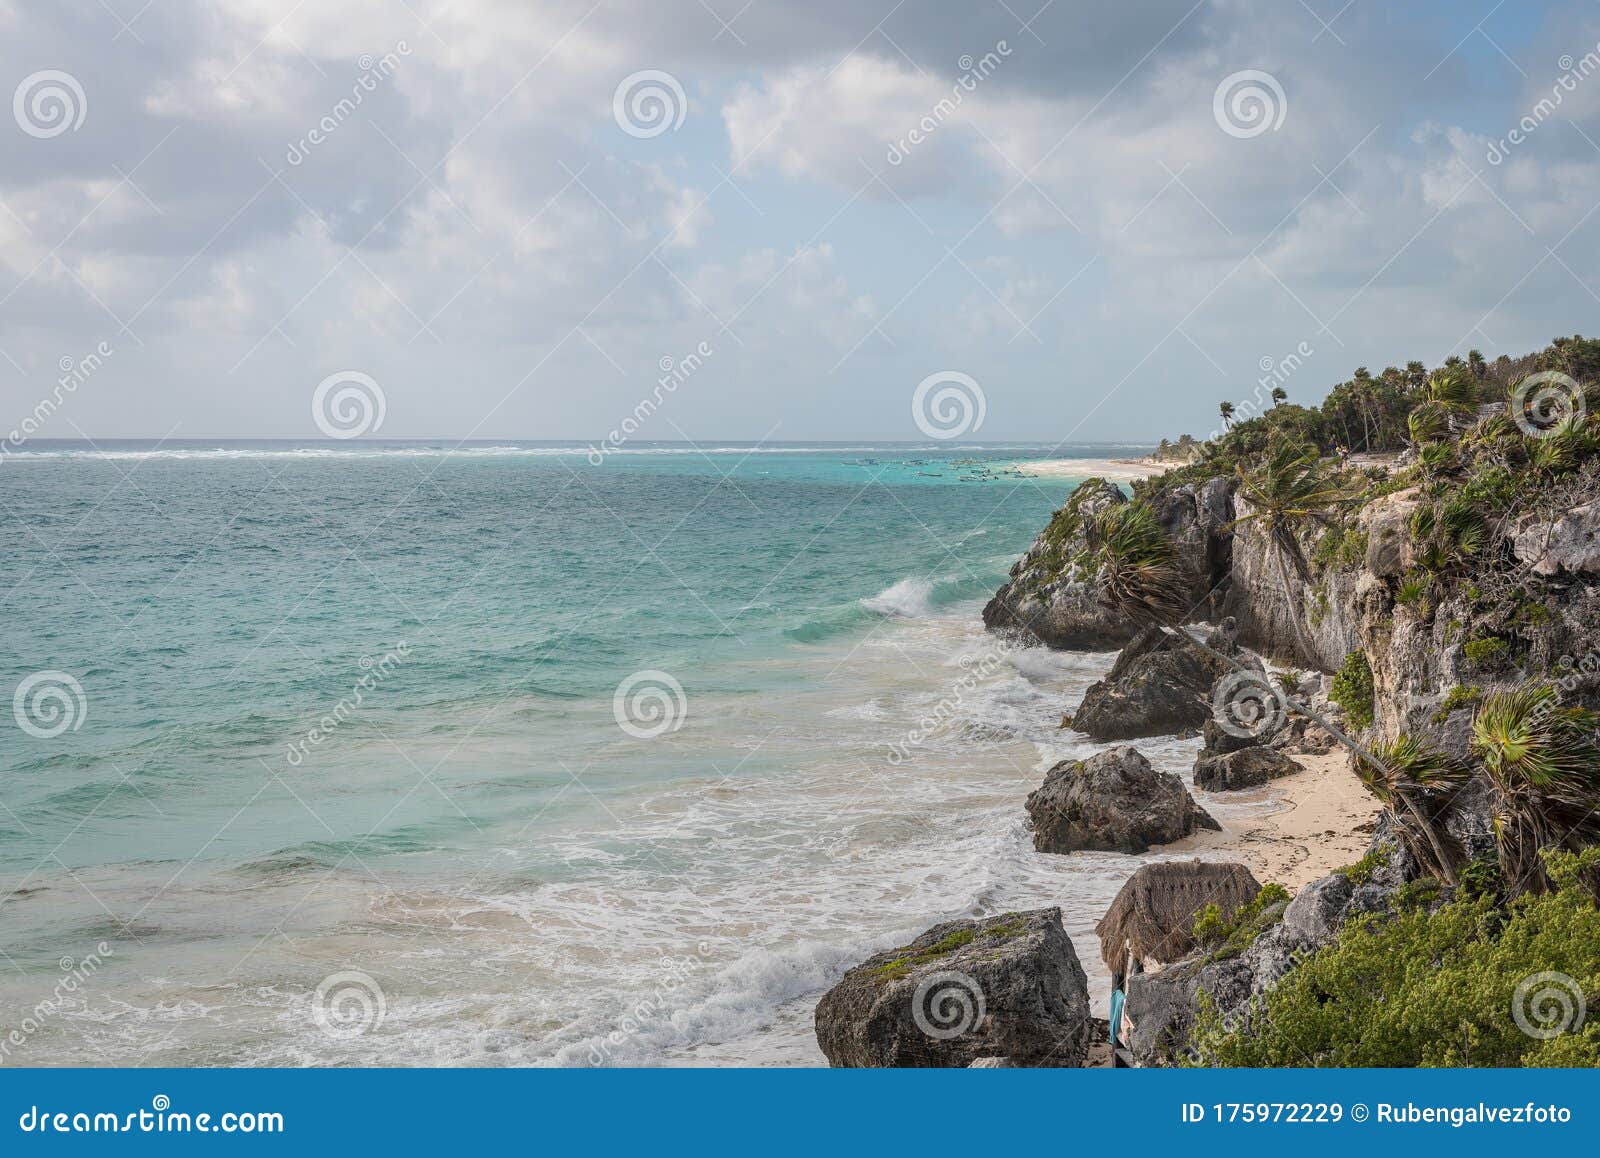 tropical coast in tulum mexico